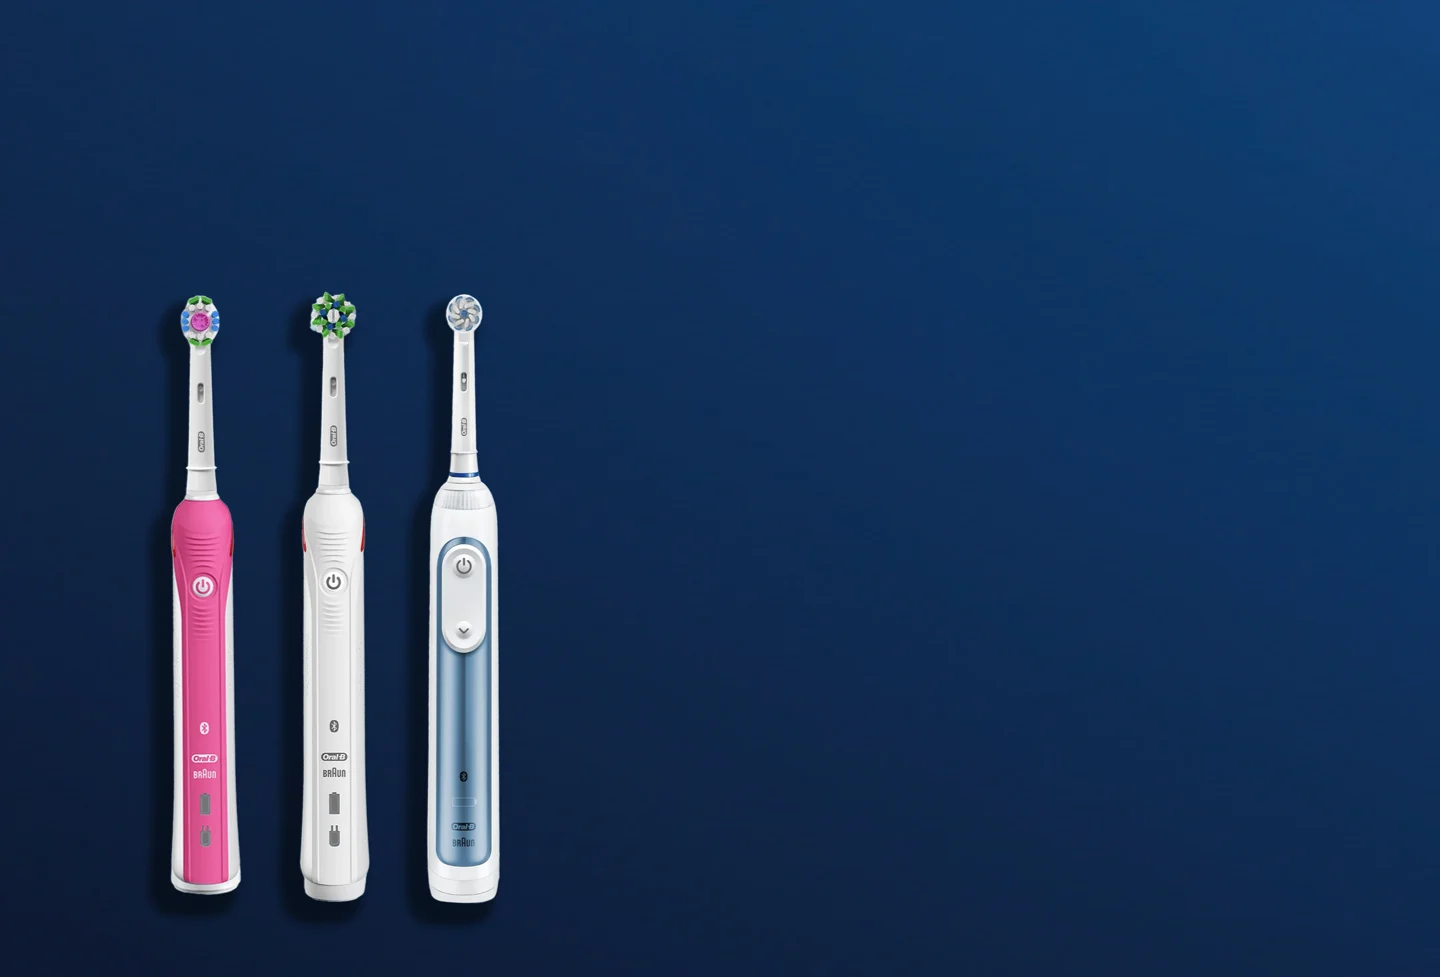 Oral-B Smart cepillo de dientes eléctrico colección